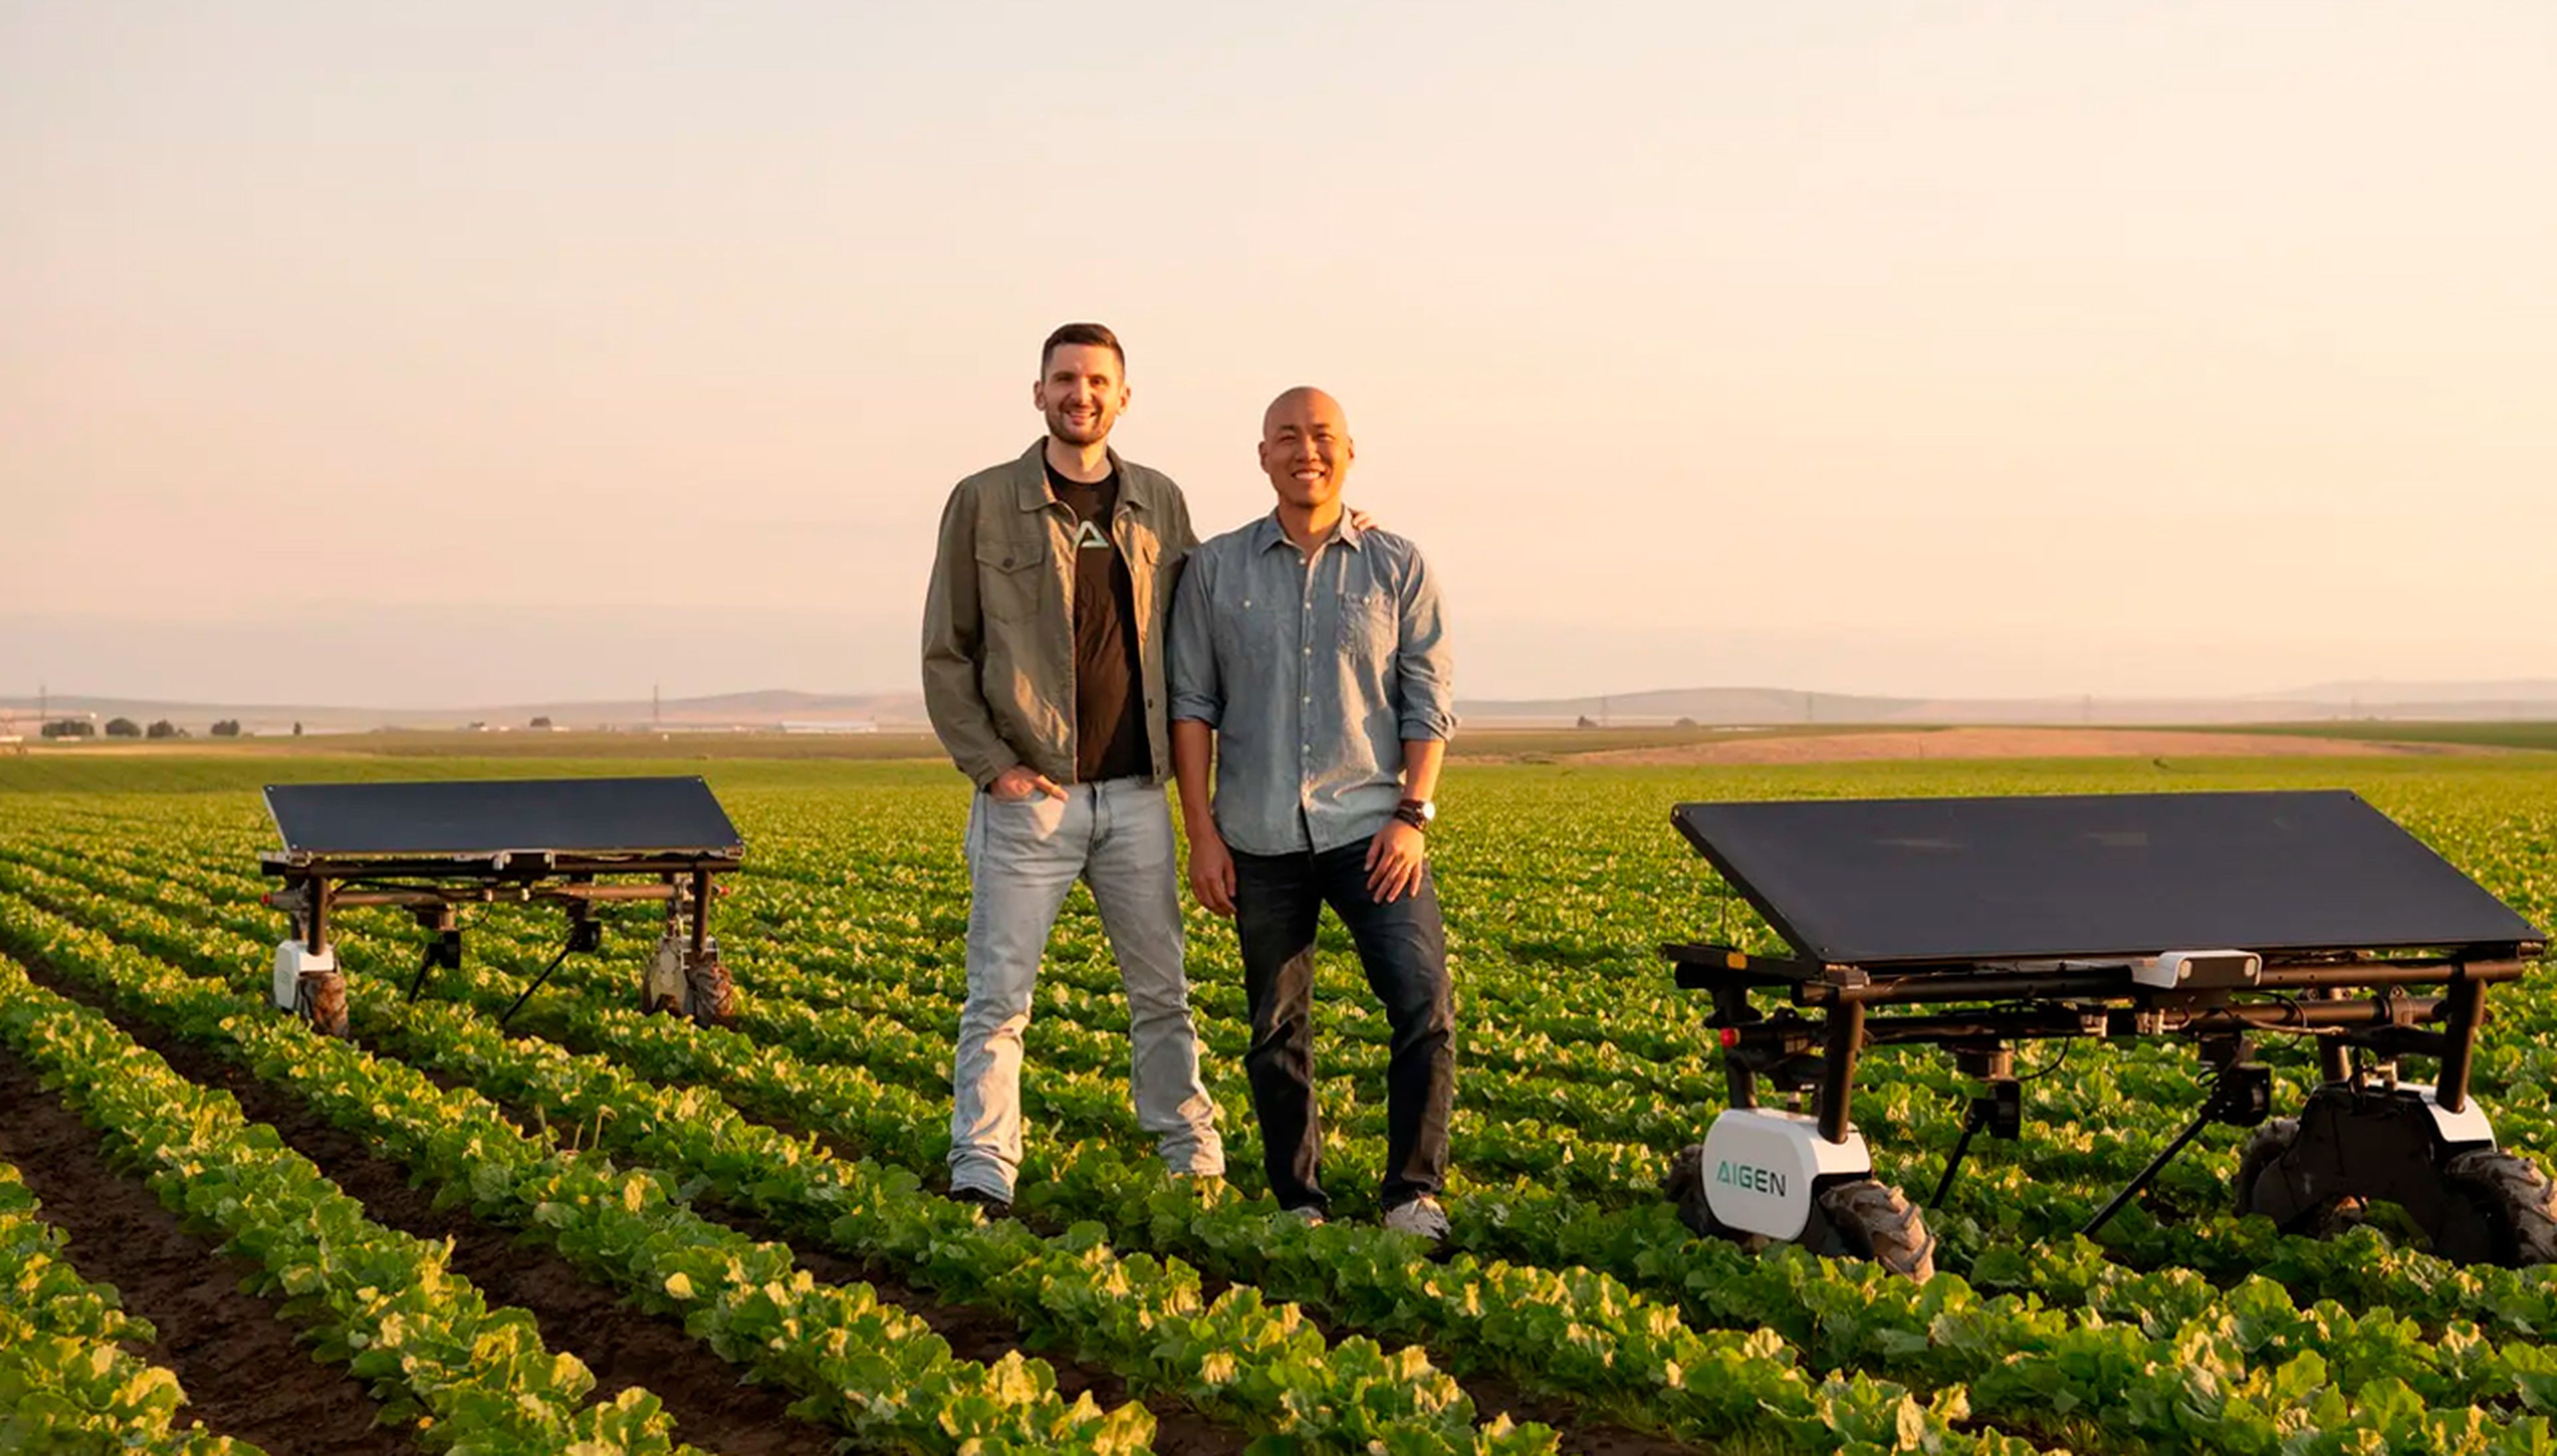 Aigen ha desarrollado una flota robótica para quitar las malas hierbas de las granjas. Hasta la fecha ha recaudado 7 millones de dólares en financiación.